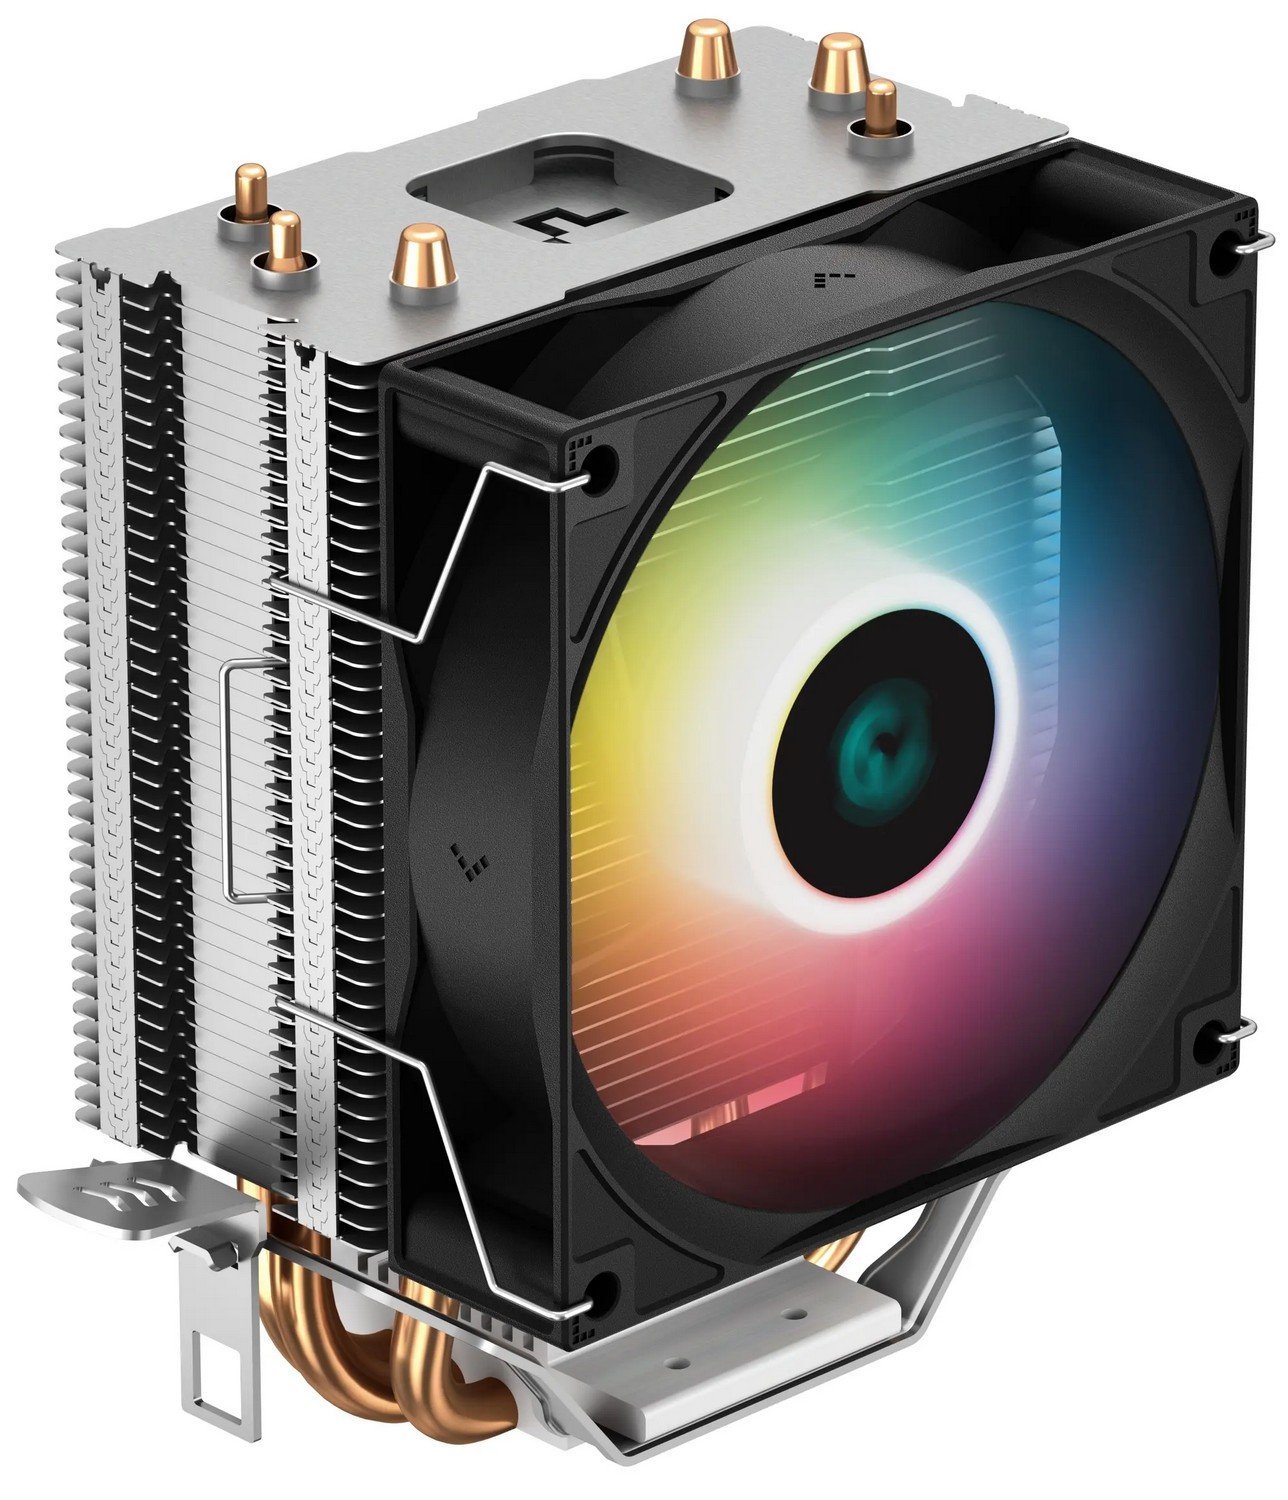 Вентилятор Deepcool AG300 LED - зображення 1